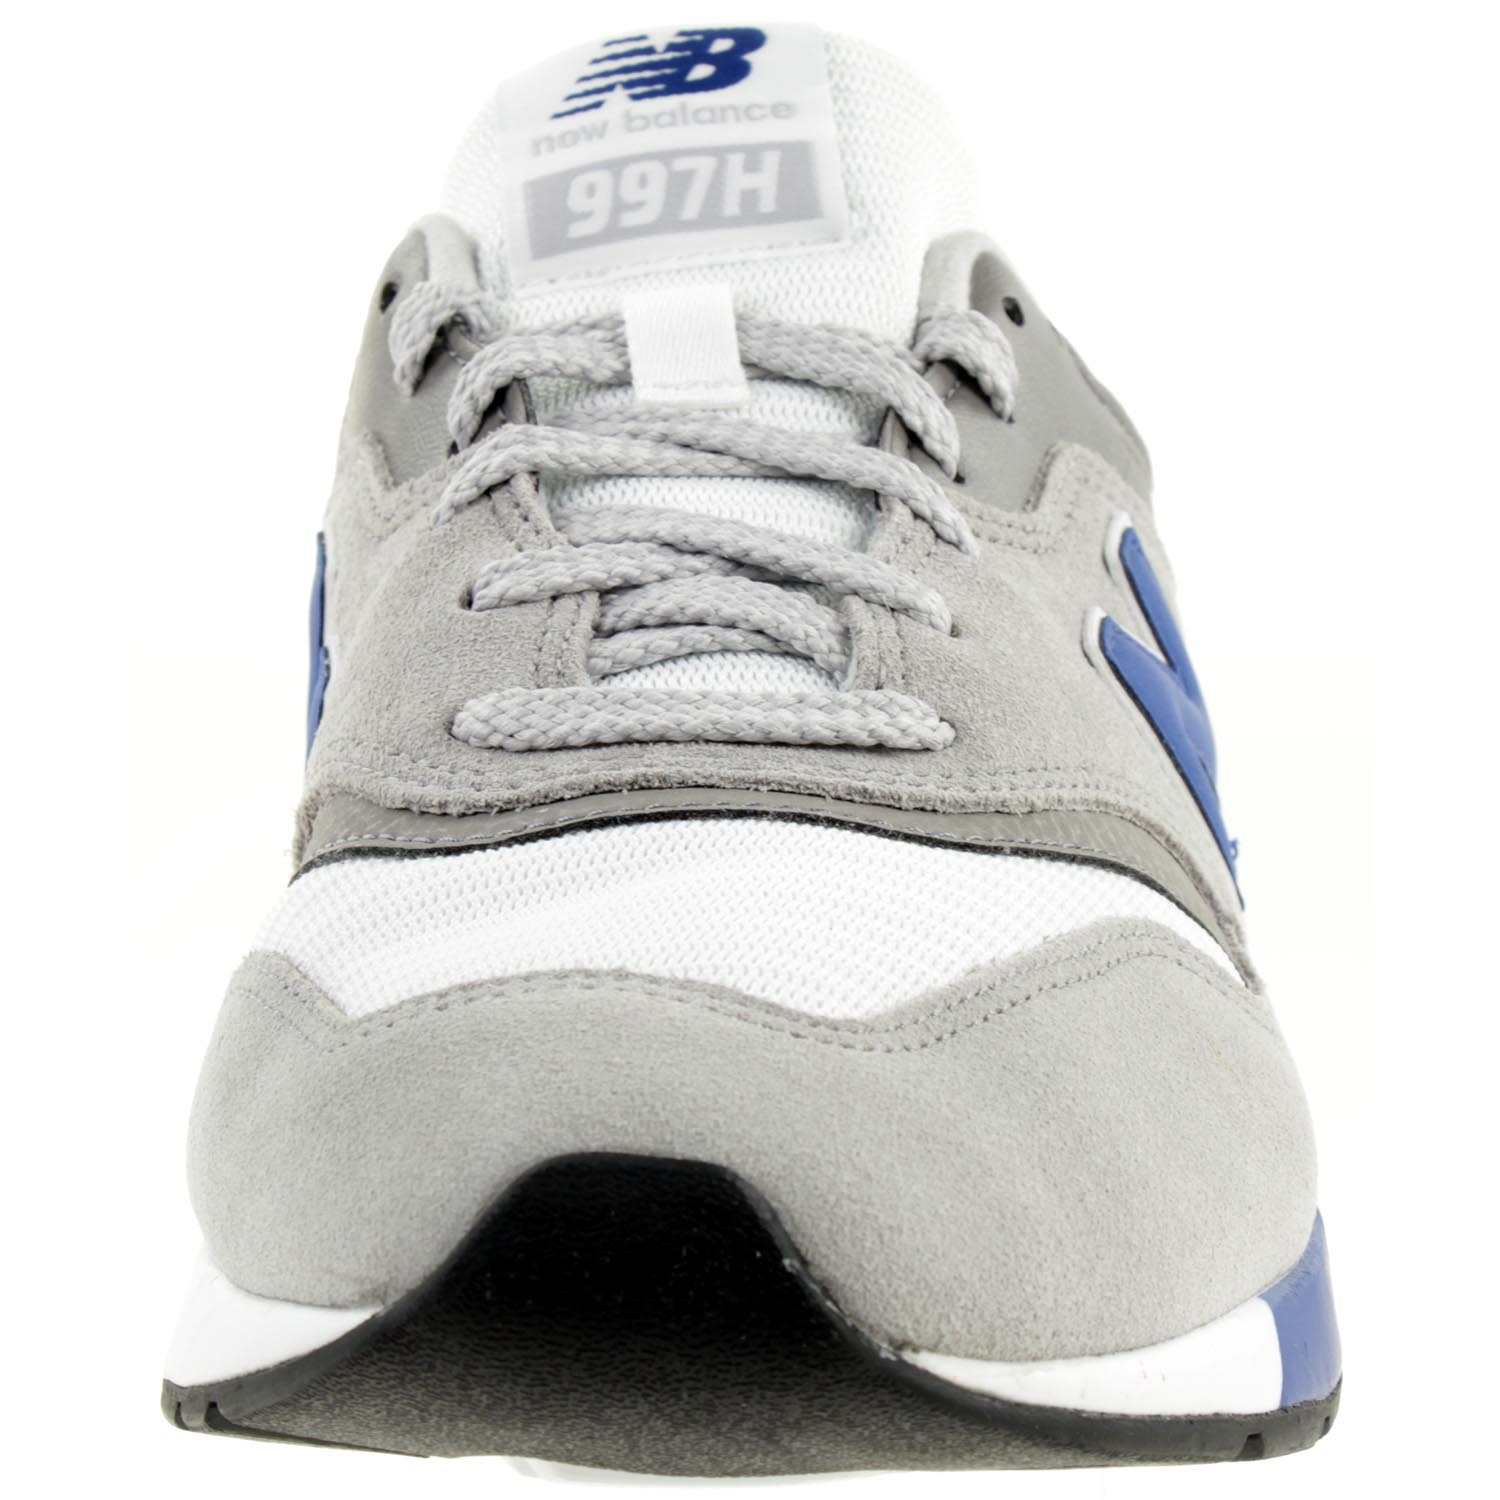 New Balance CM997 HEY Sneaker Herren Schuhe grau